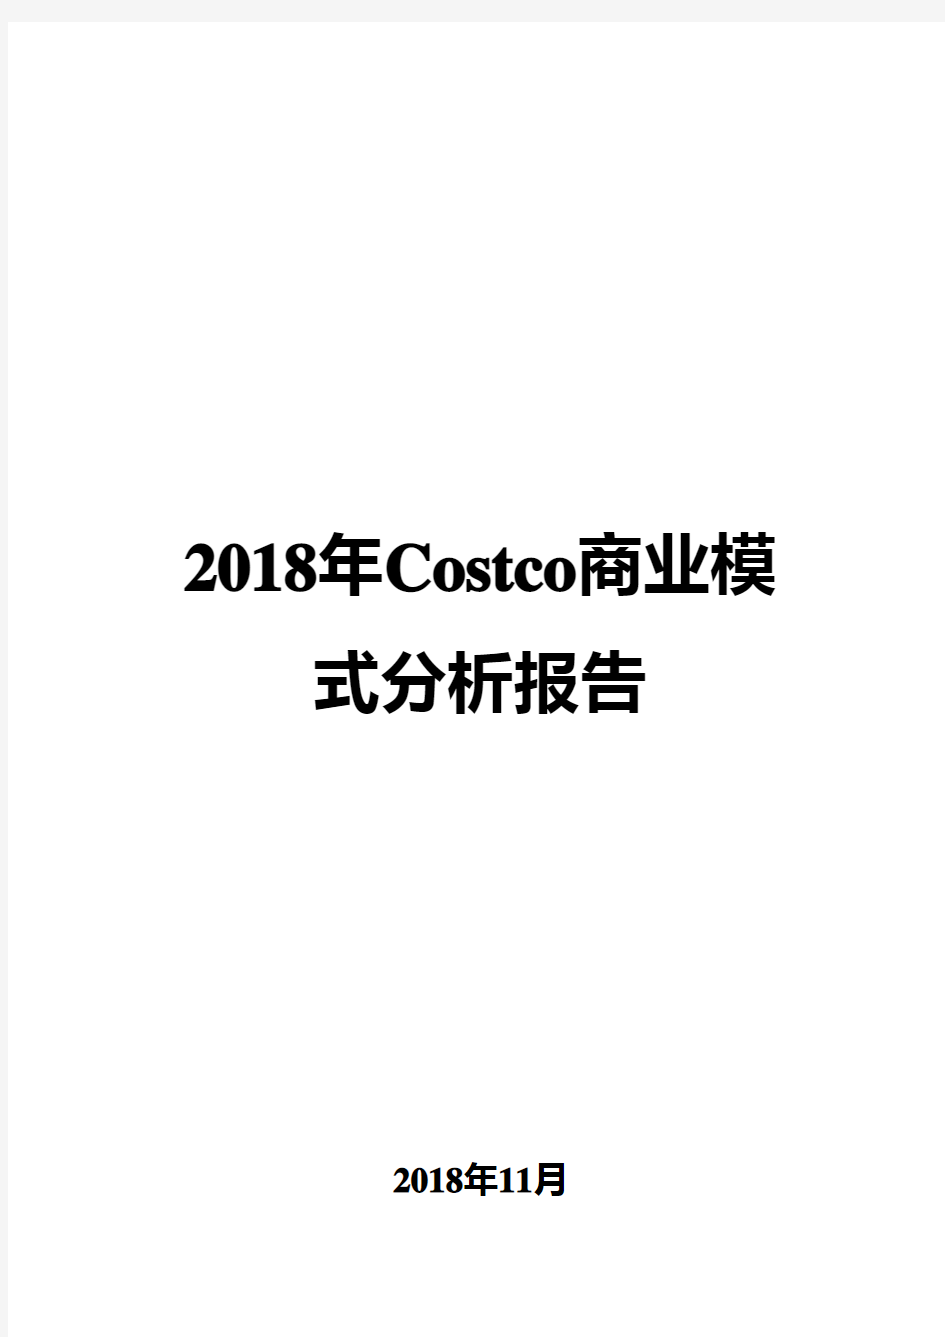 2018年Costco商业模式分析报告